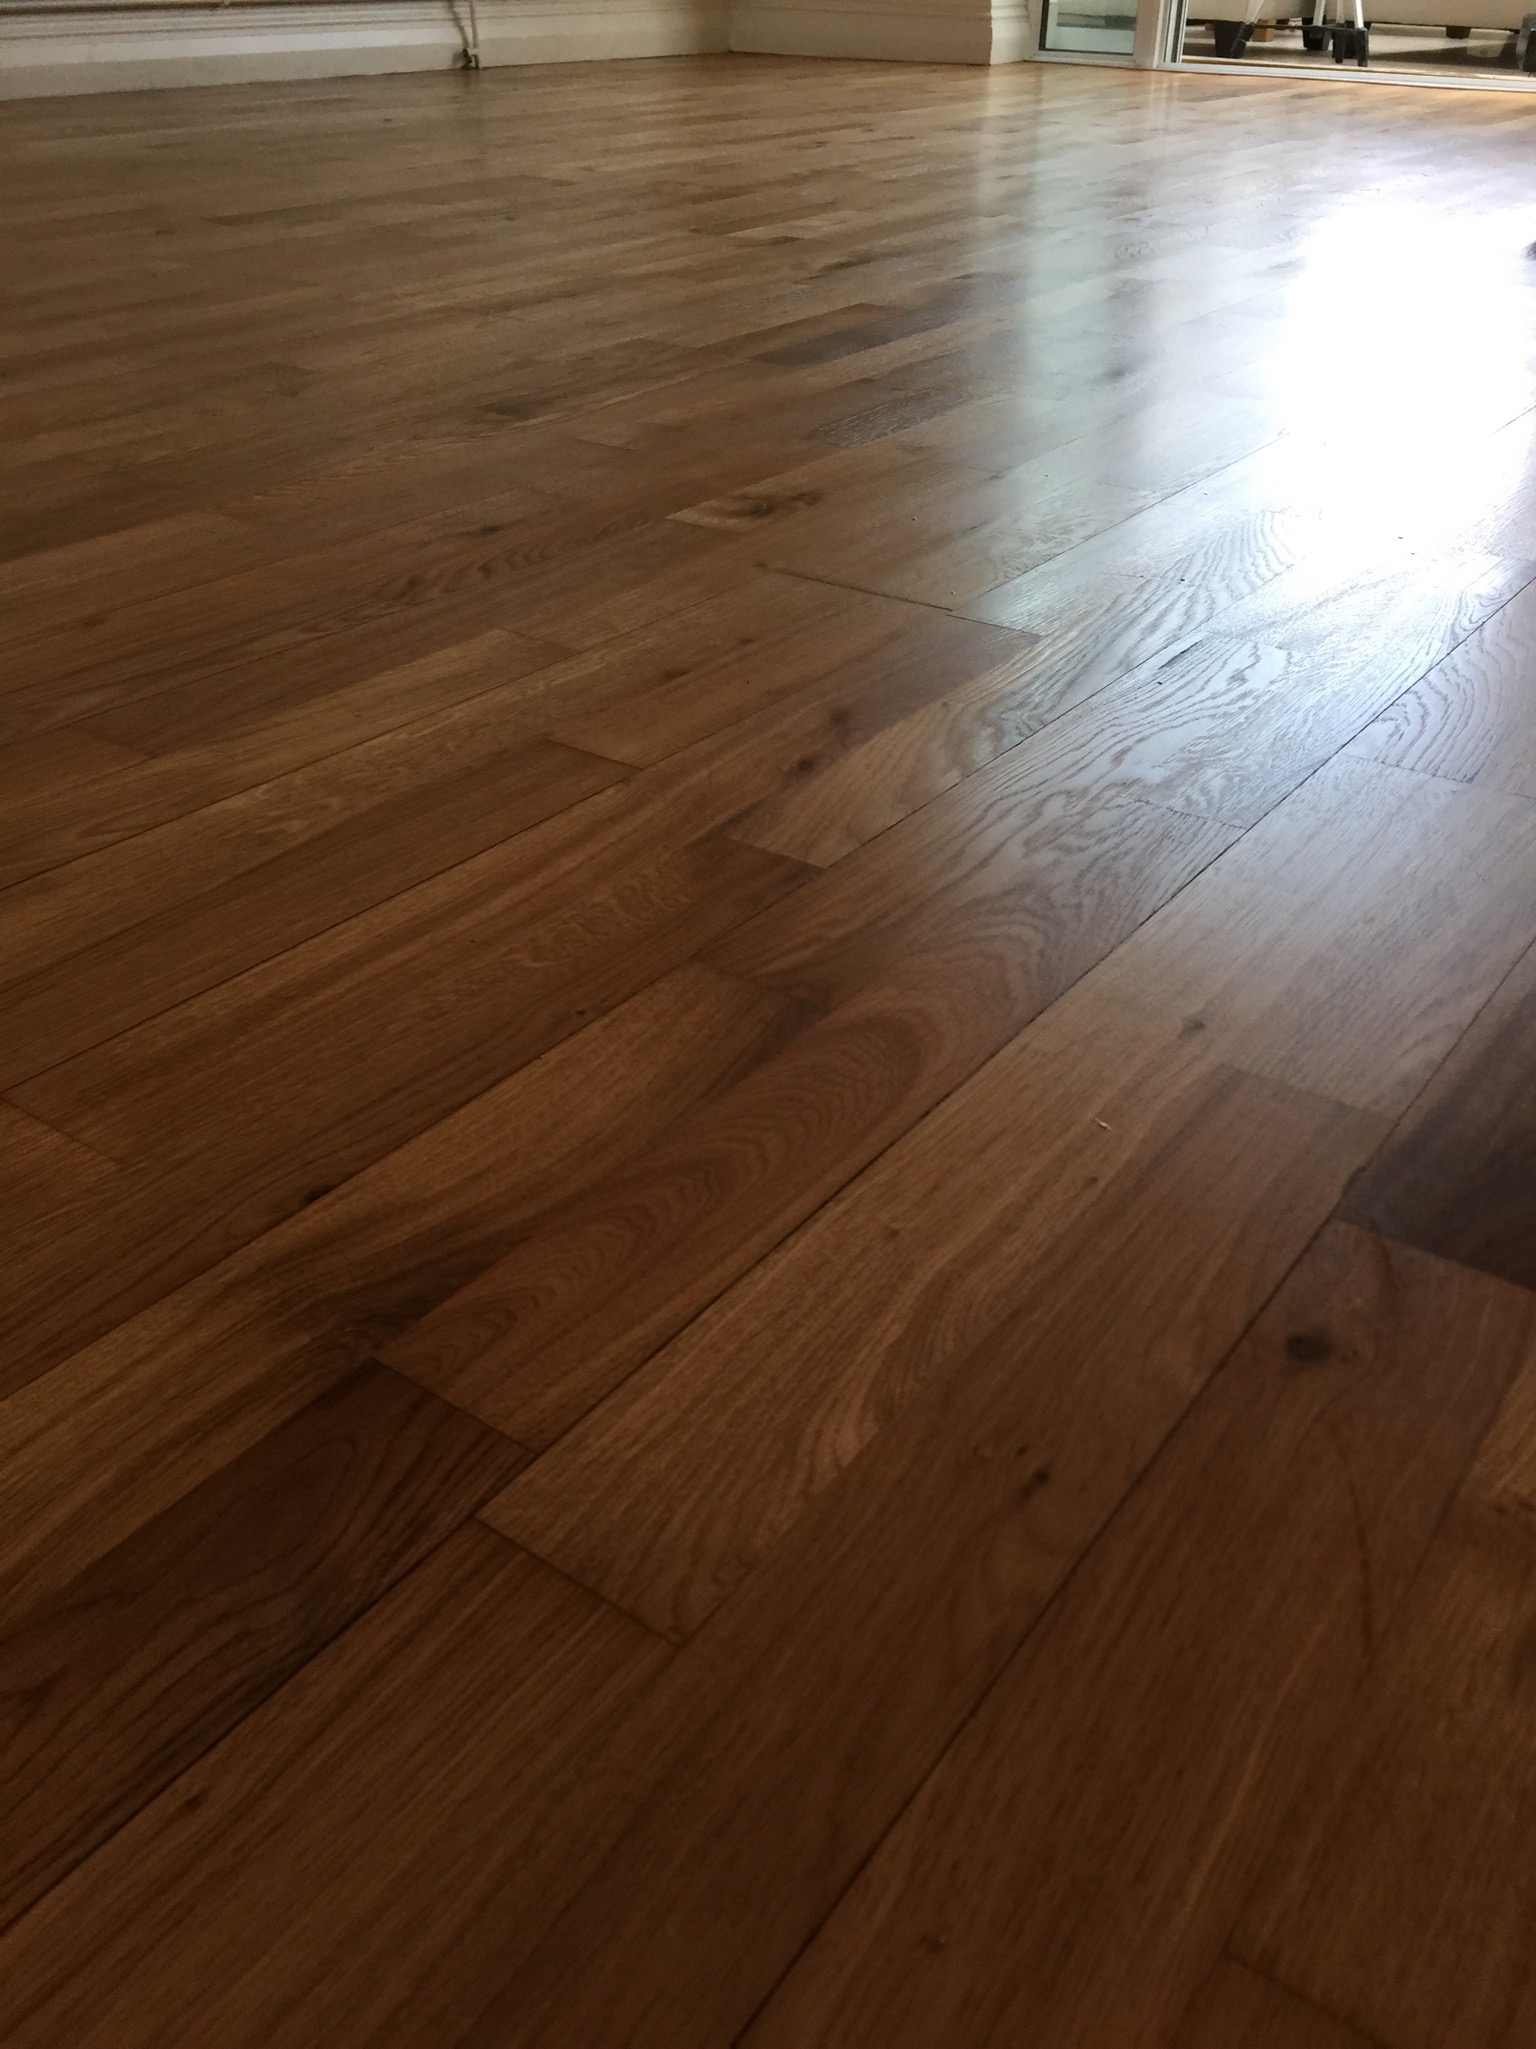 Solid Oak Floor Sanding and Oiling in Pratt's Bottom